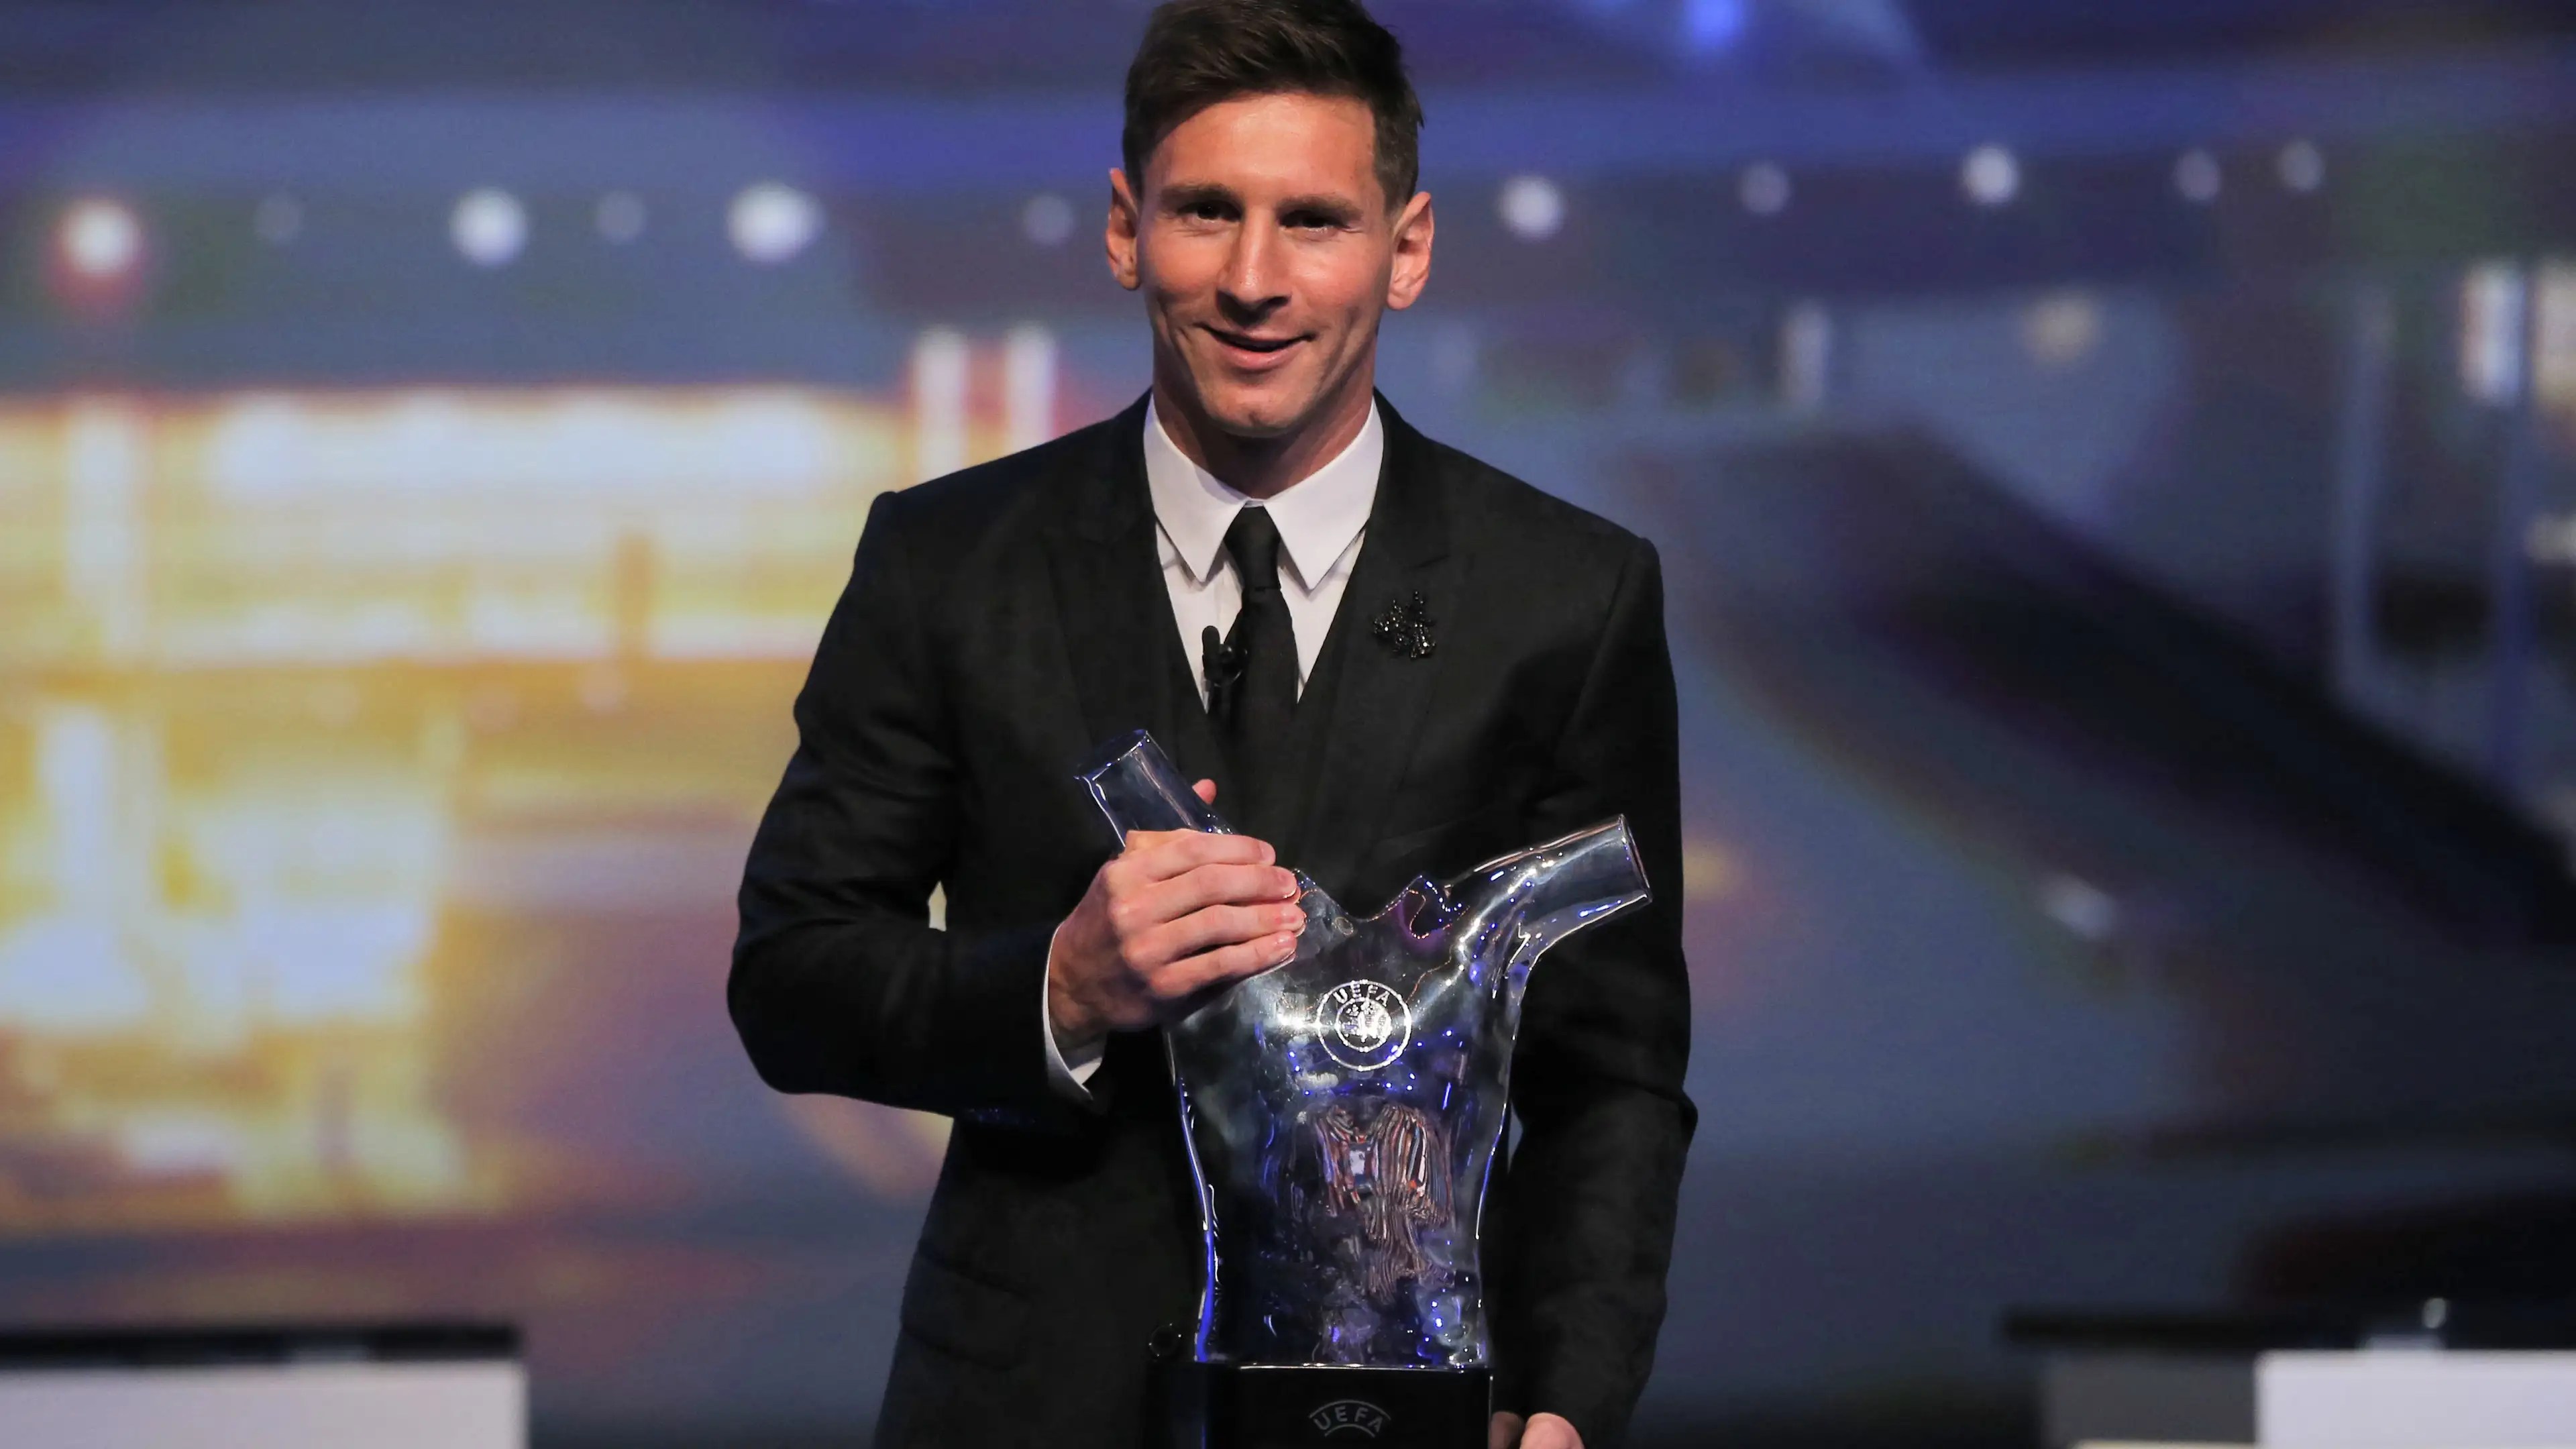 La última vez que Lionel Messi ganó el premio fue en 2015.